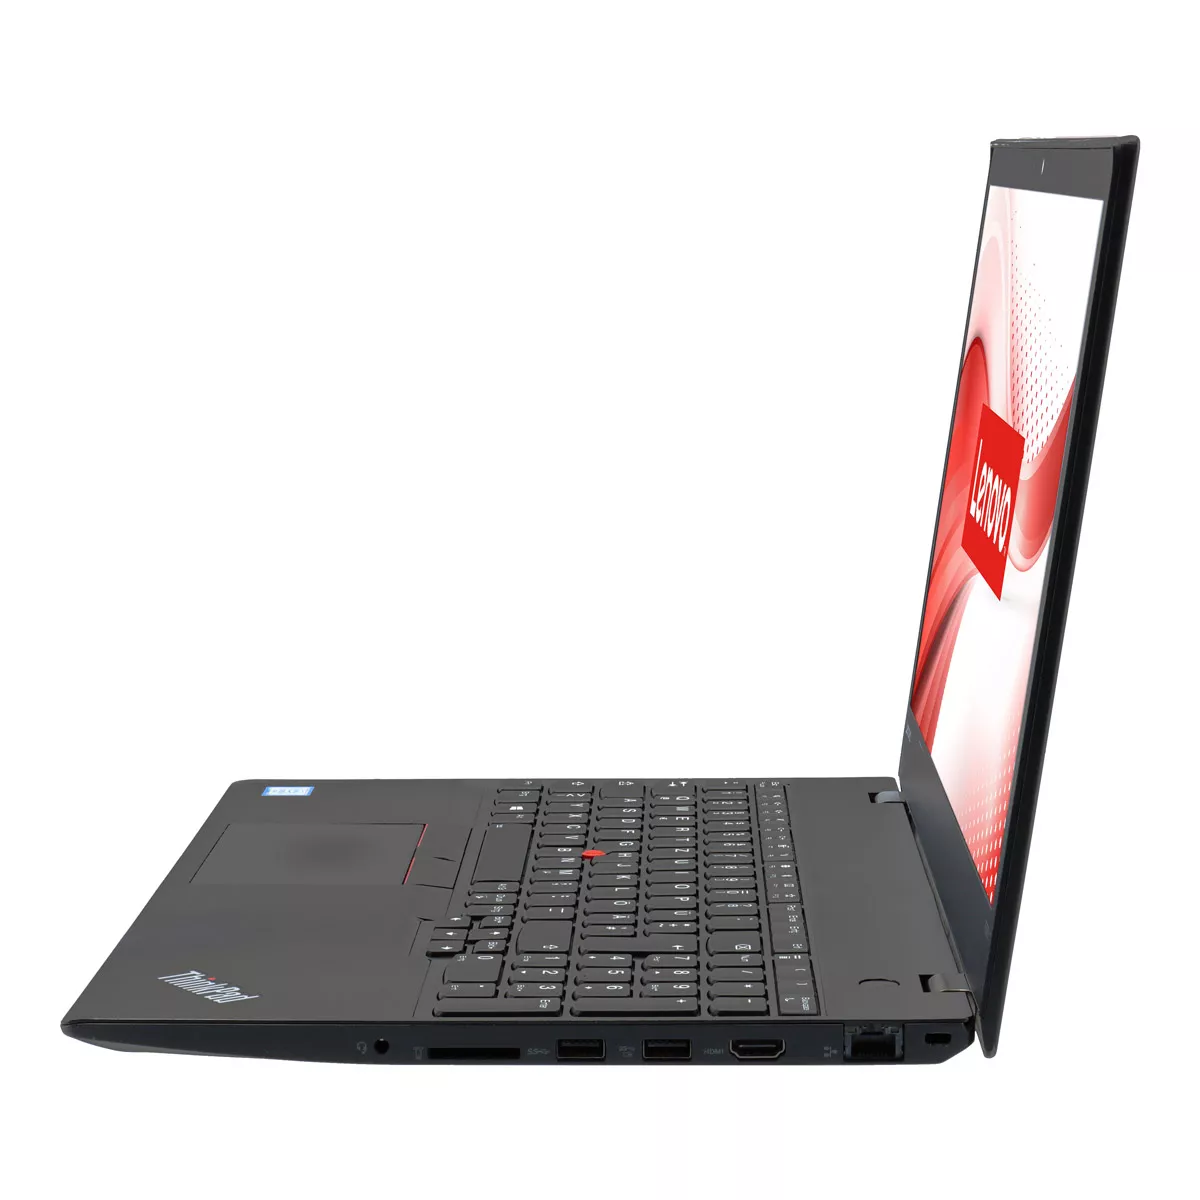 Lenovo ThinkPad T580 Core i5 8250U Full-HD 240 GB M.2 nVME SSD Webcam B